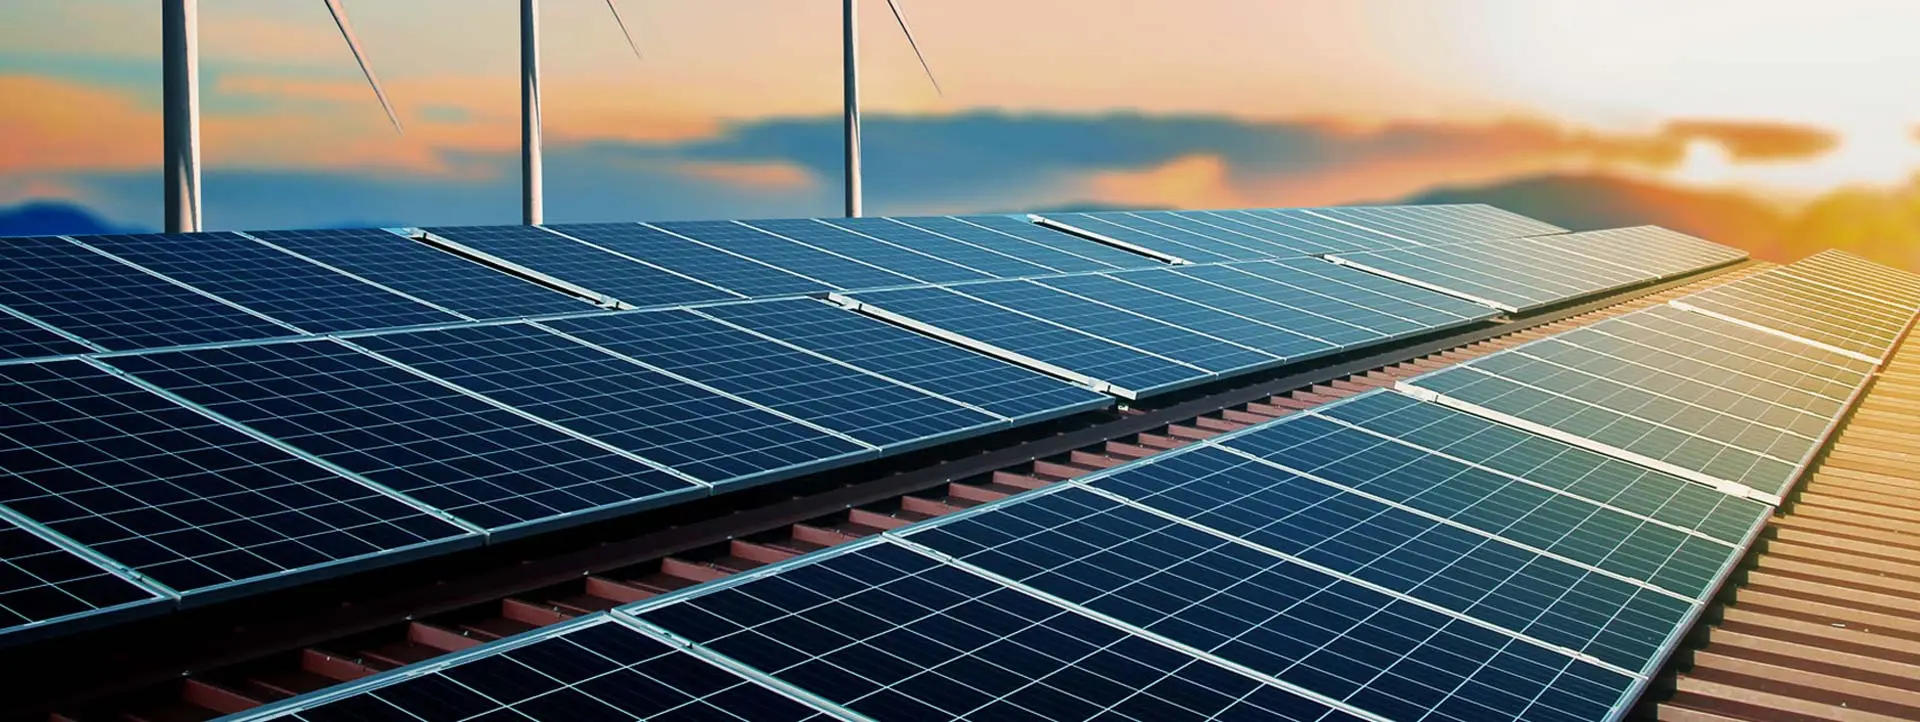 حلول تخزين الطاقة الشمسية JKCSOLAR